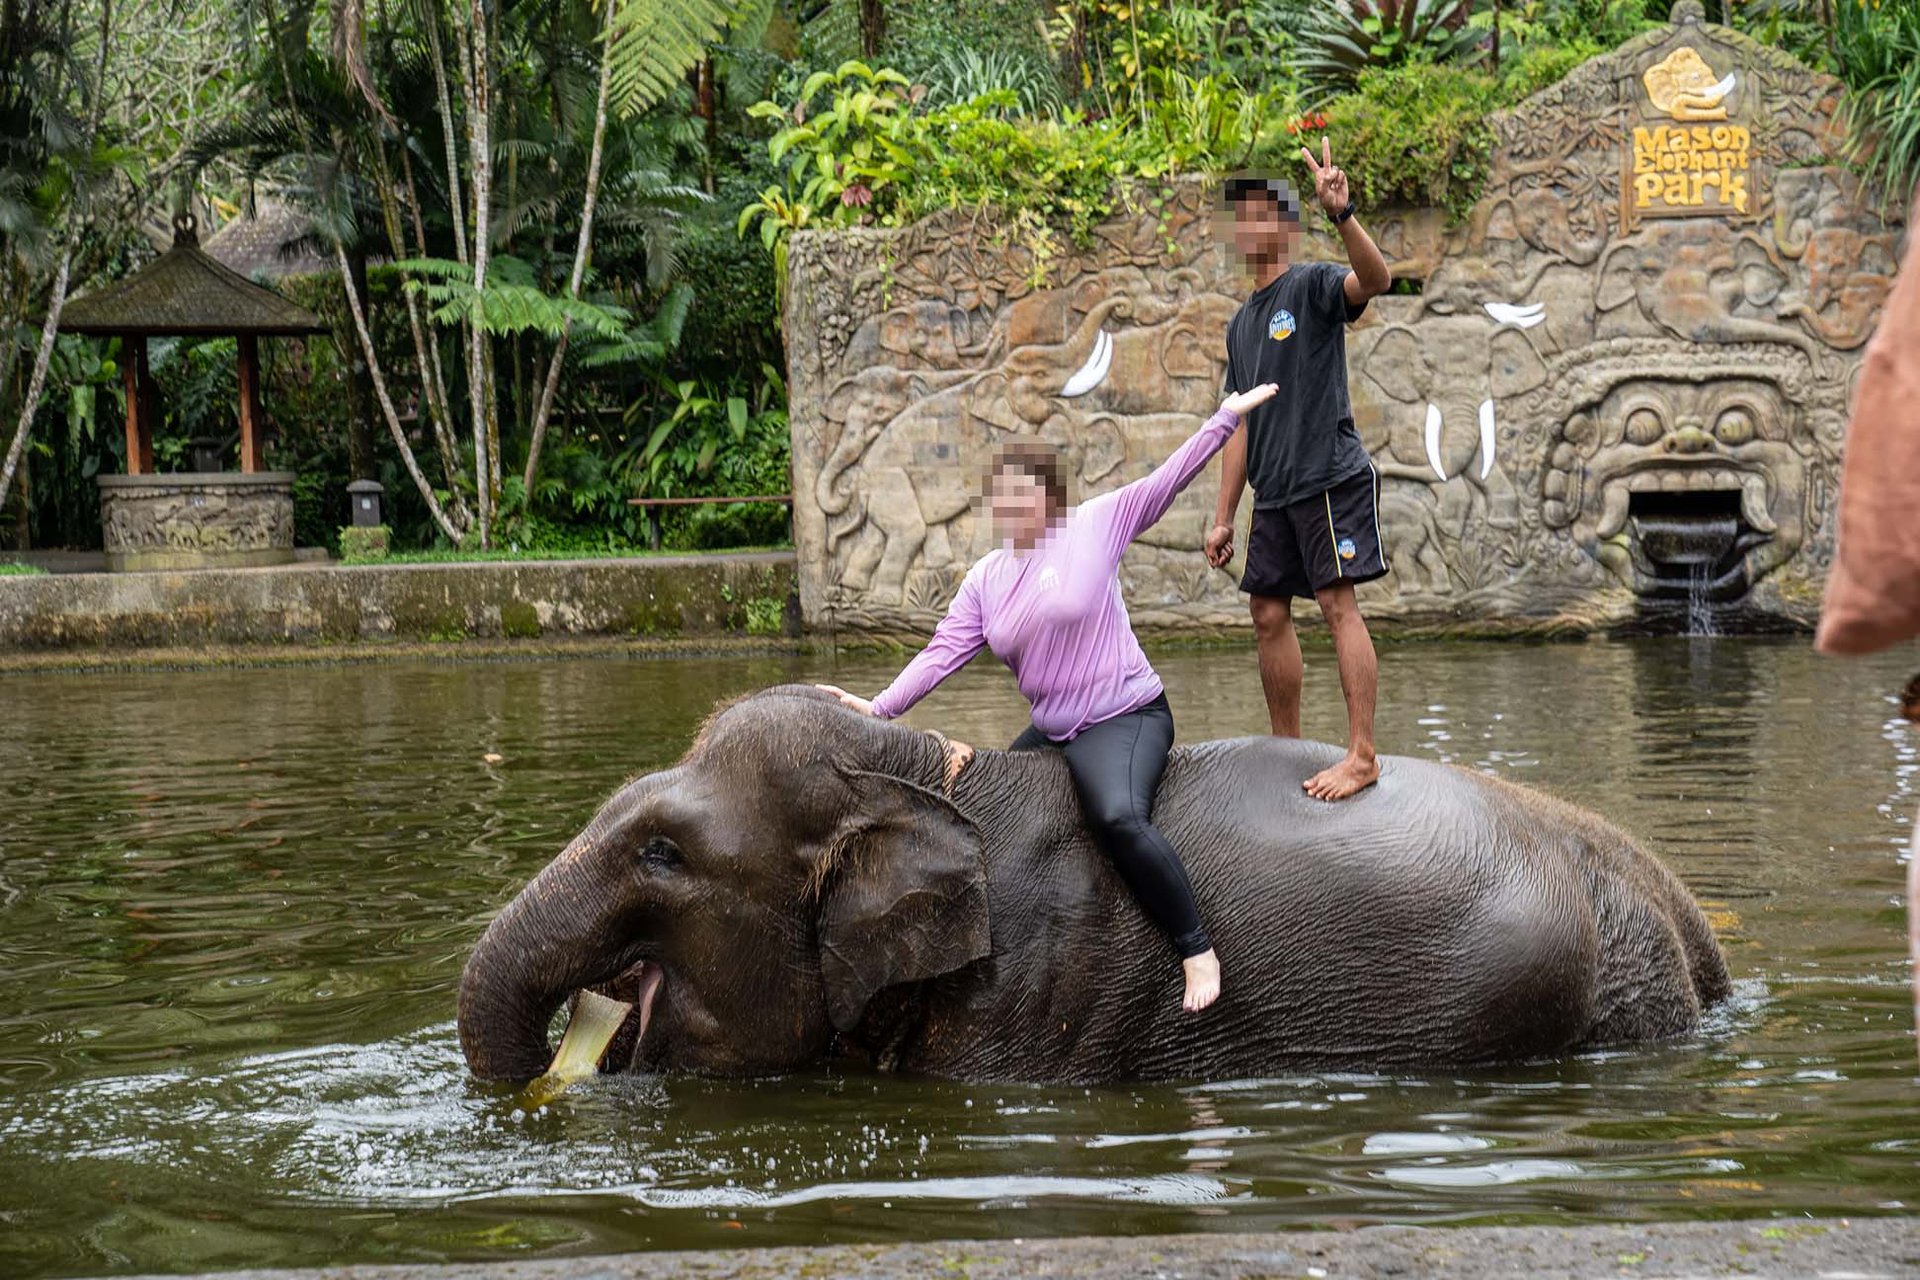 A tourist poses on an elephant.